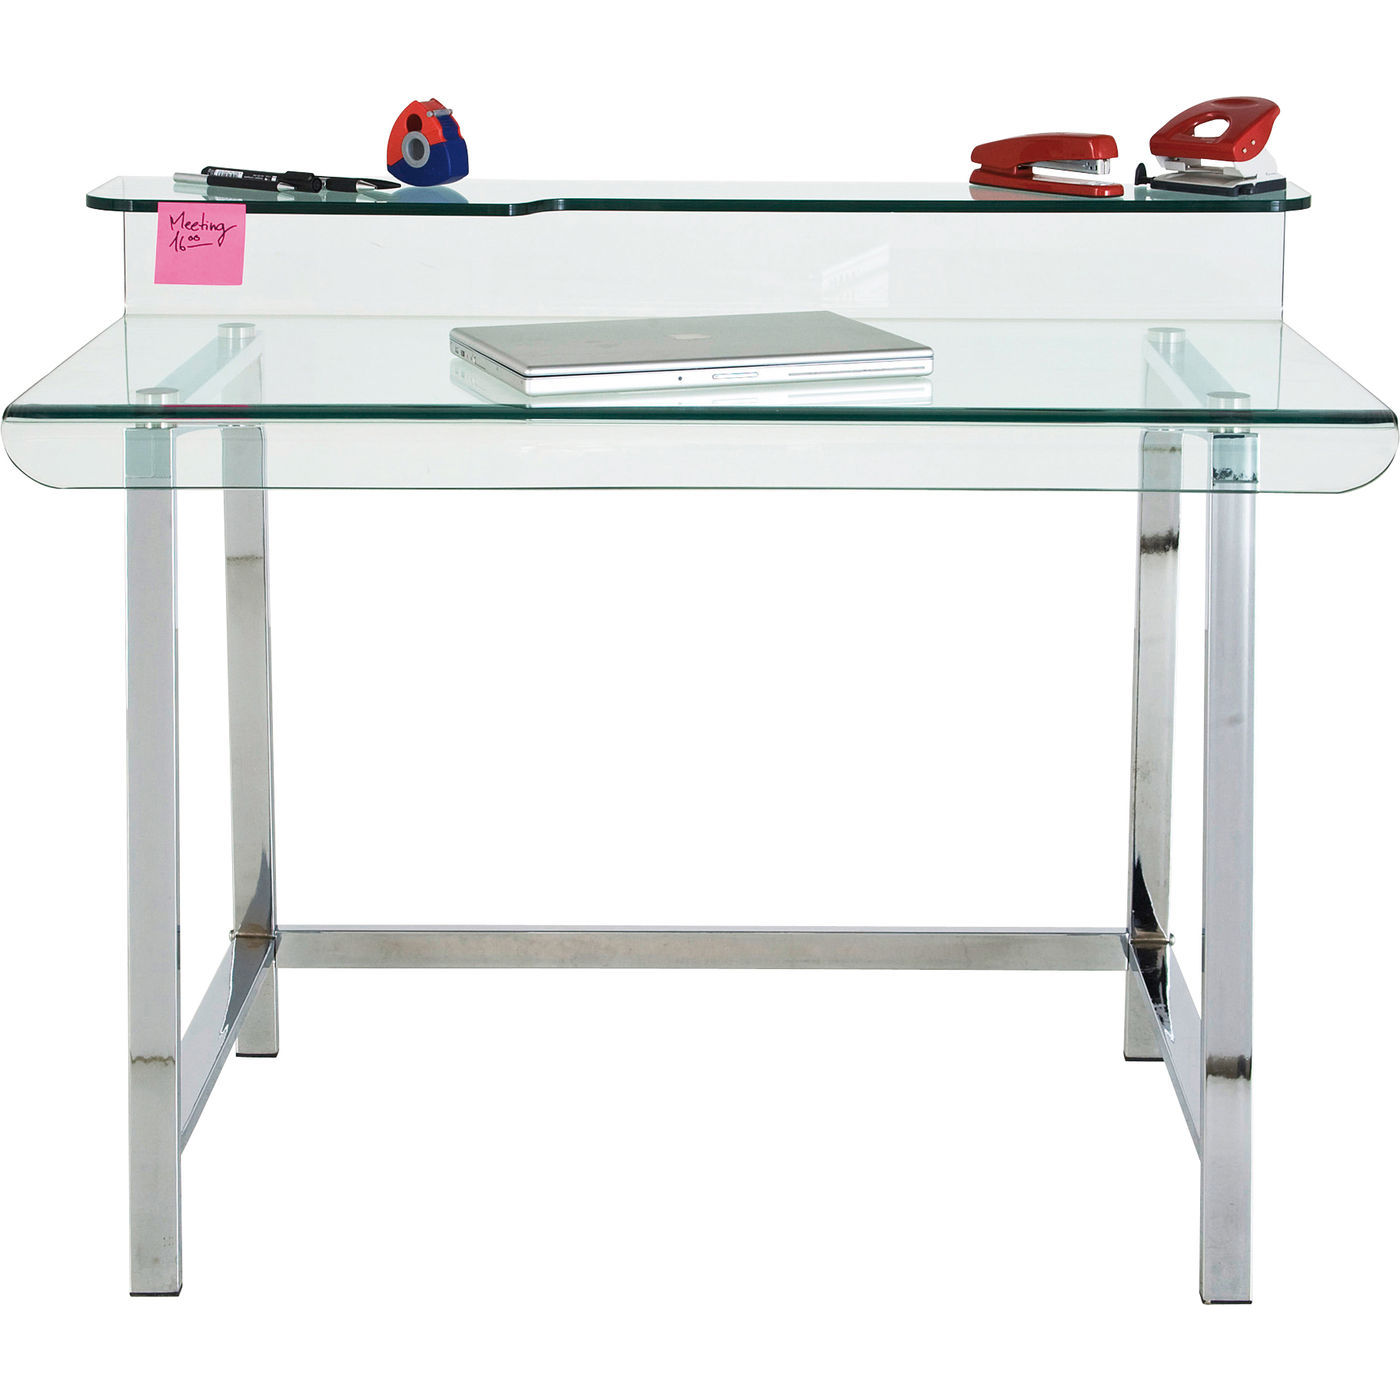 KARE DESIGN Visible skrivebord - glas og stål thumbnail